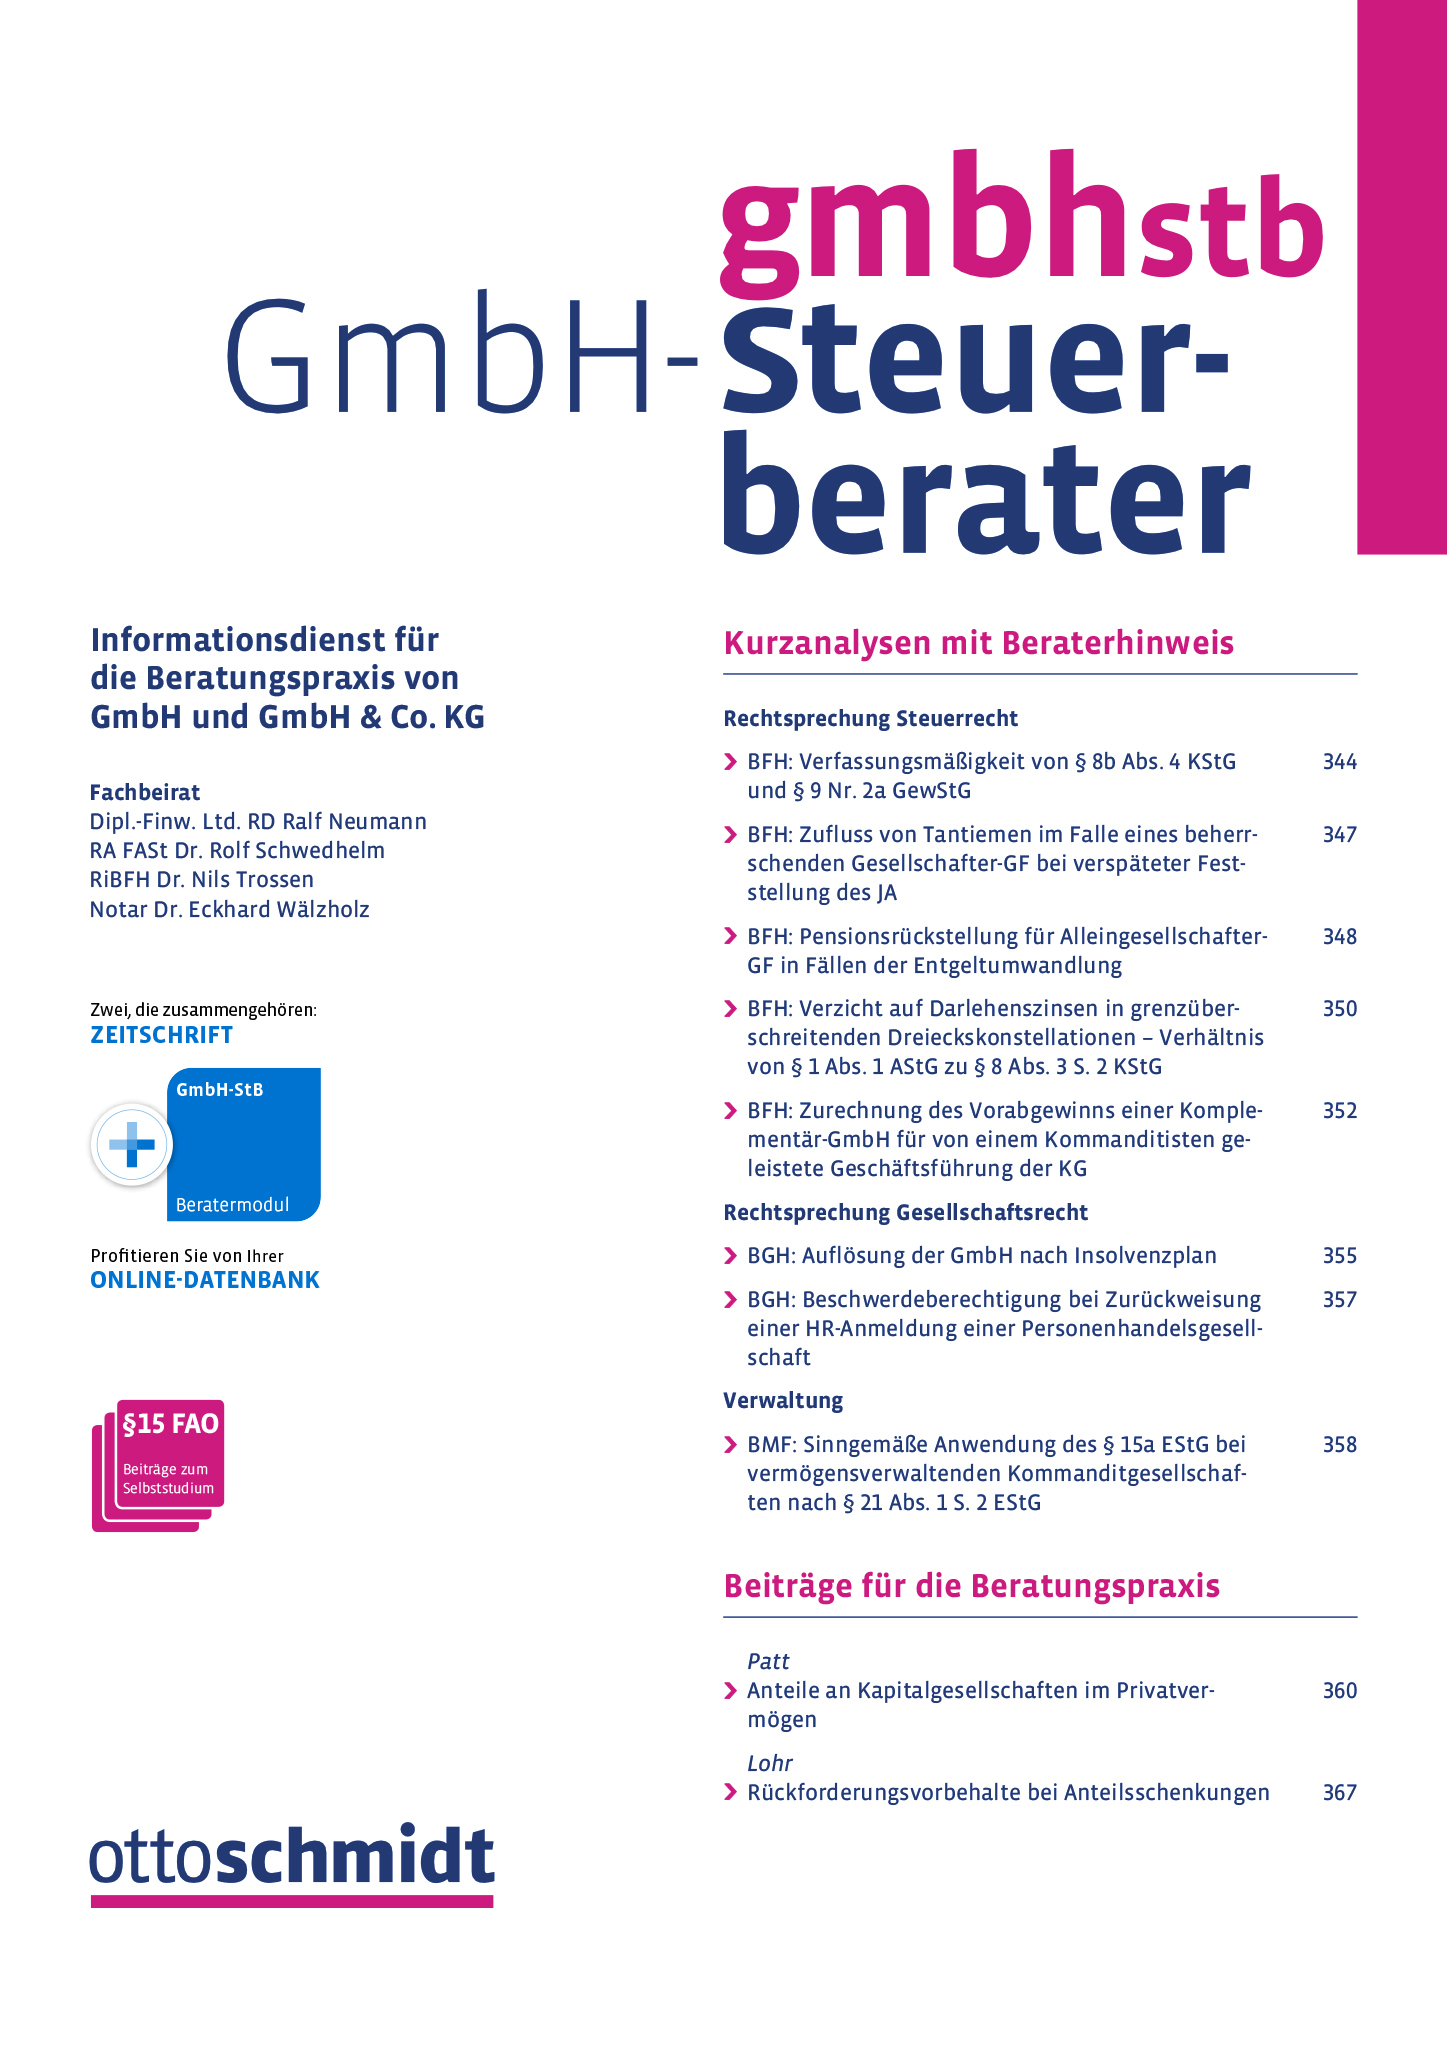 GmbH-Steuerberater Coverabbildung